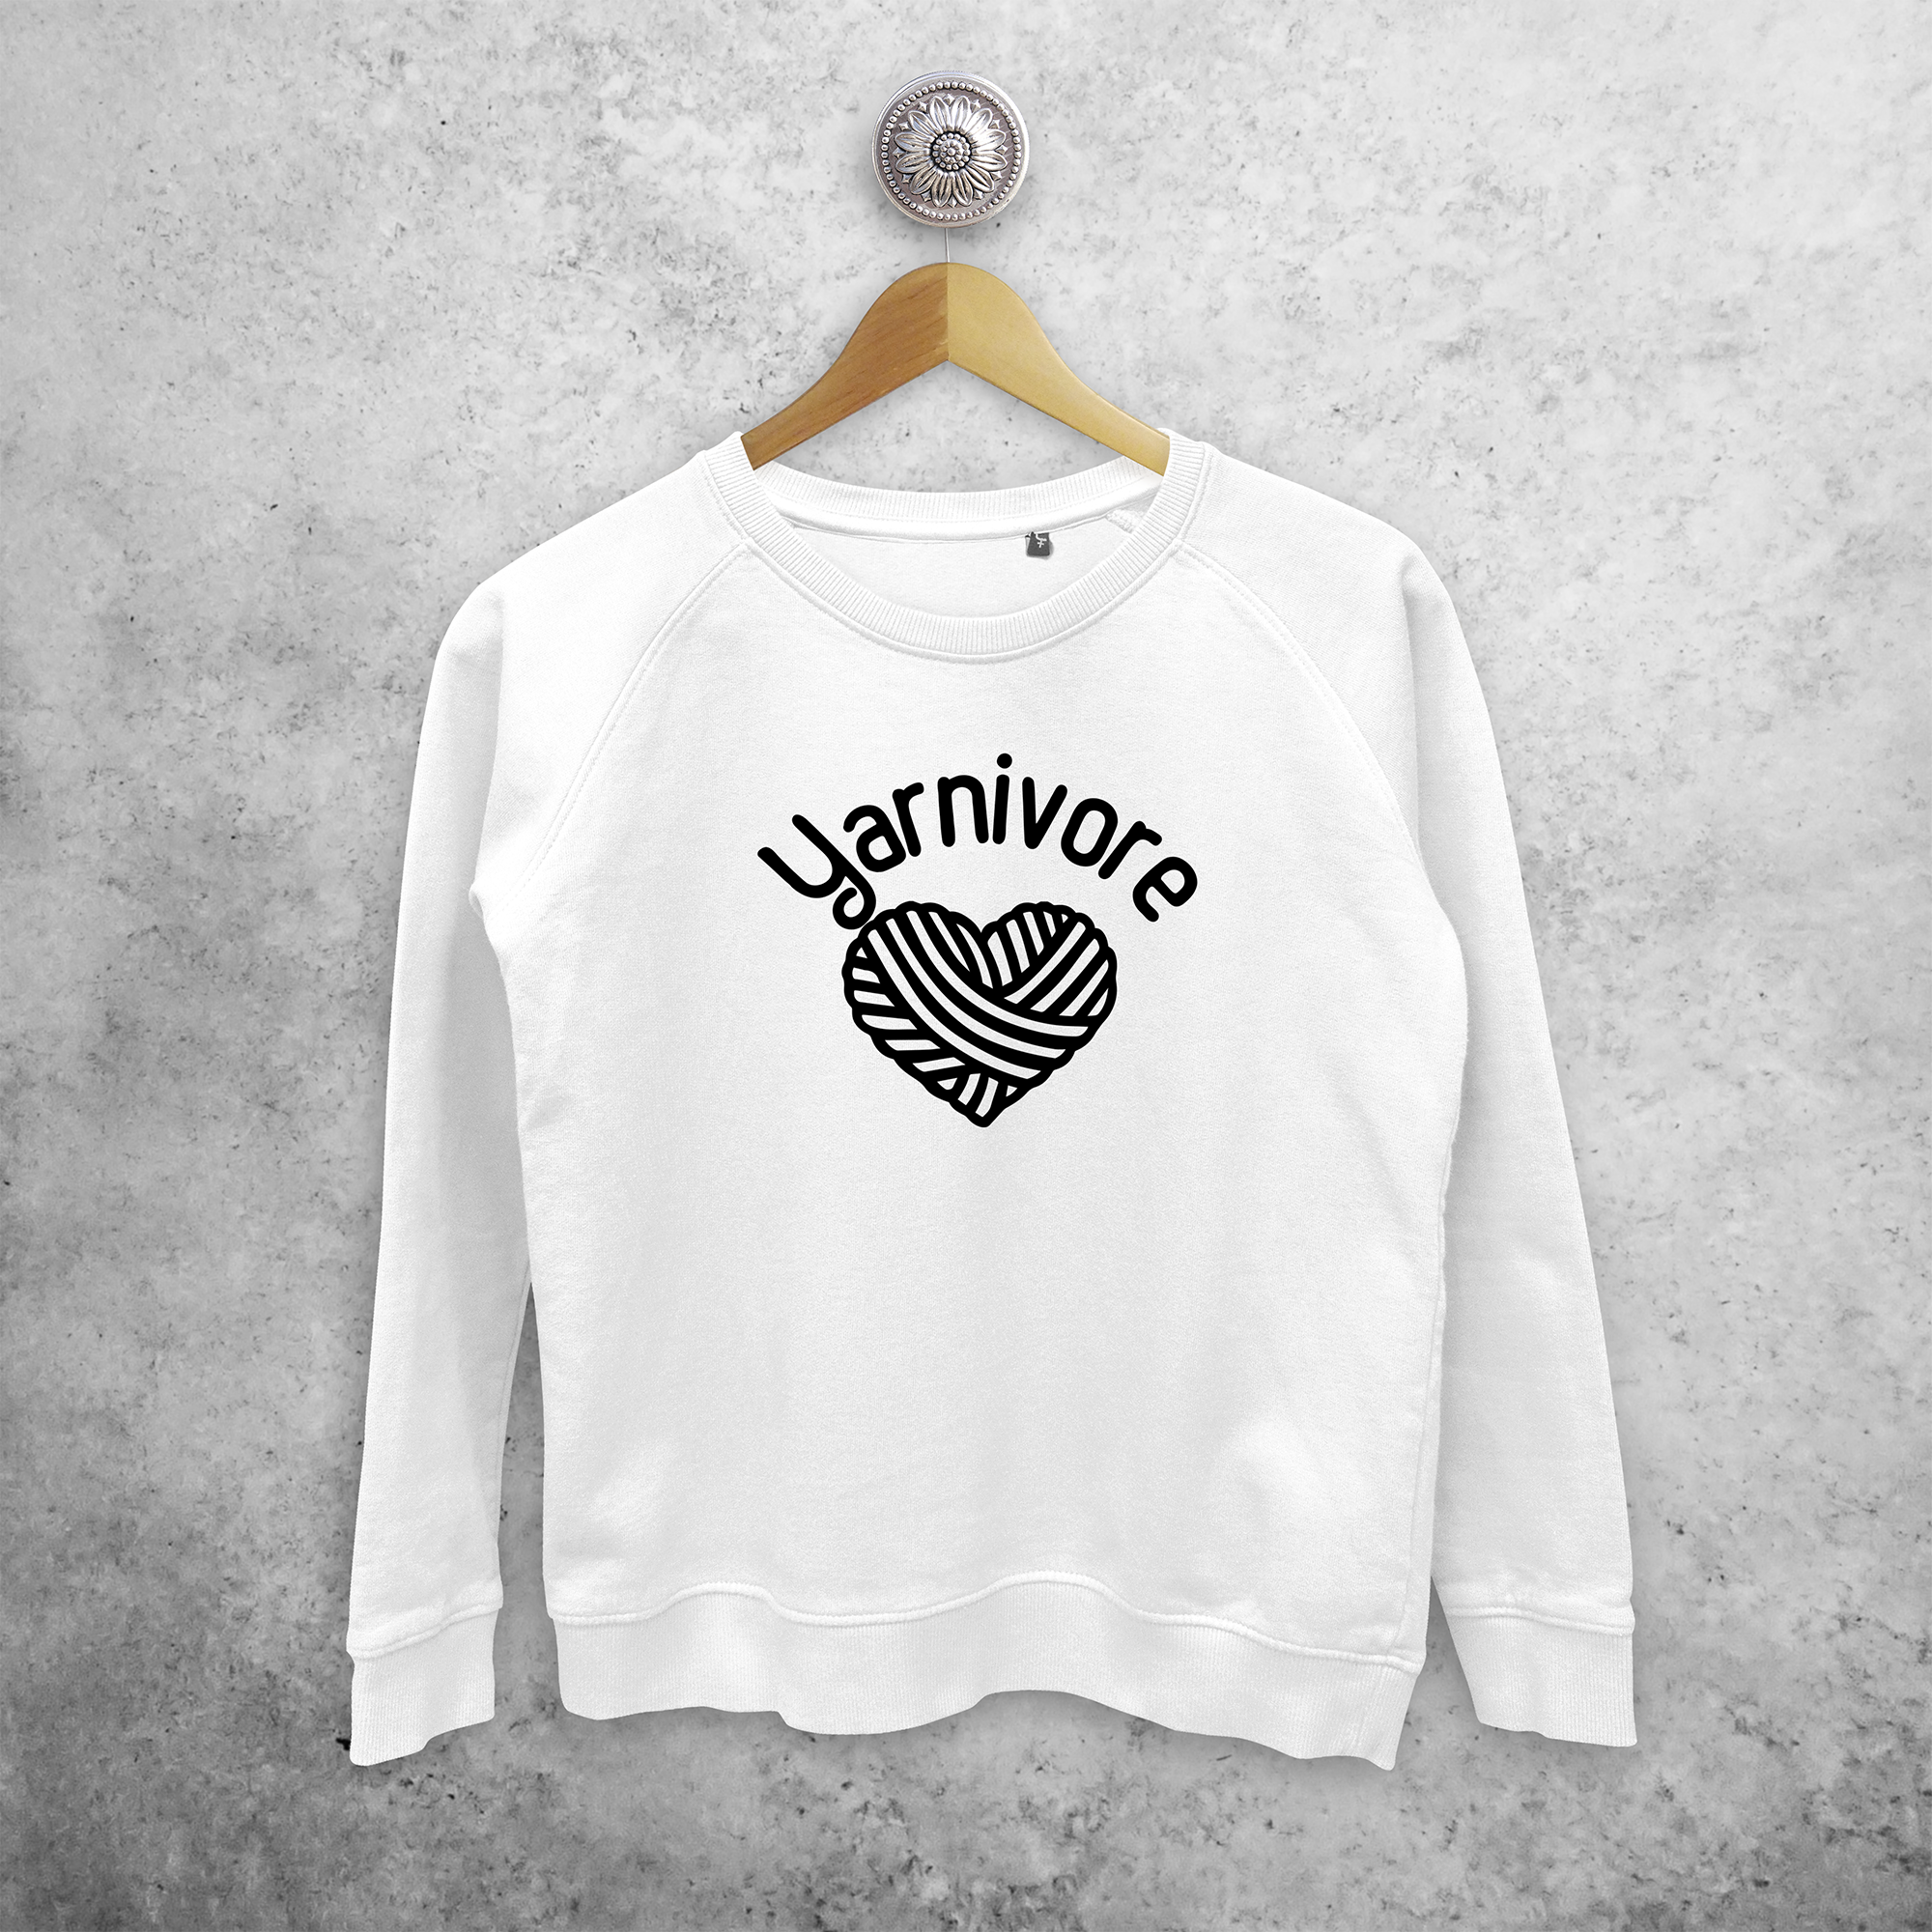 'Yarnivore' sweater